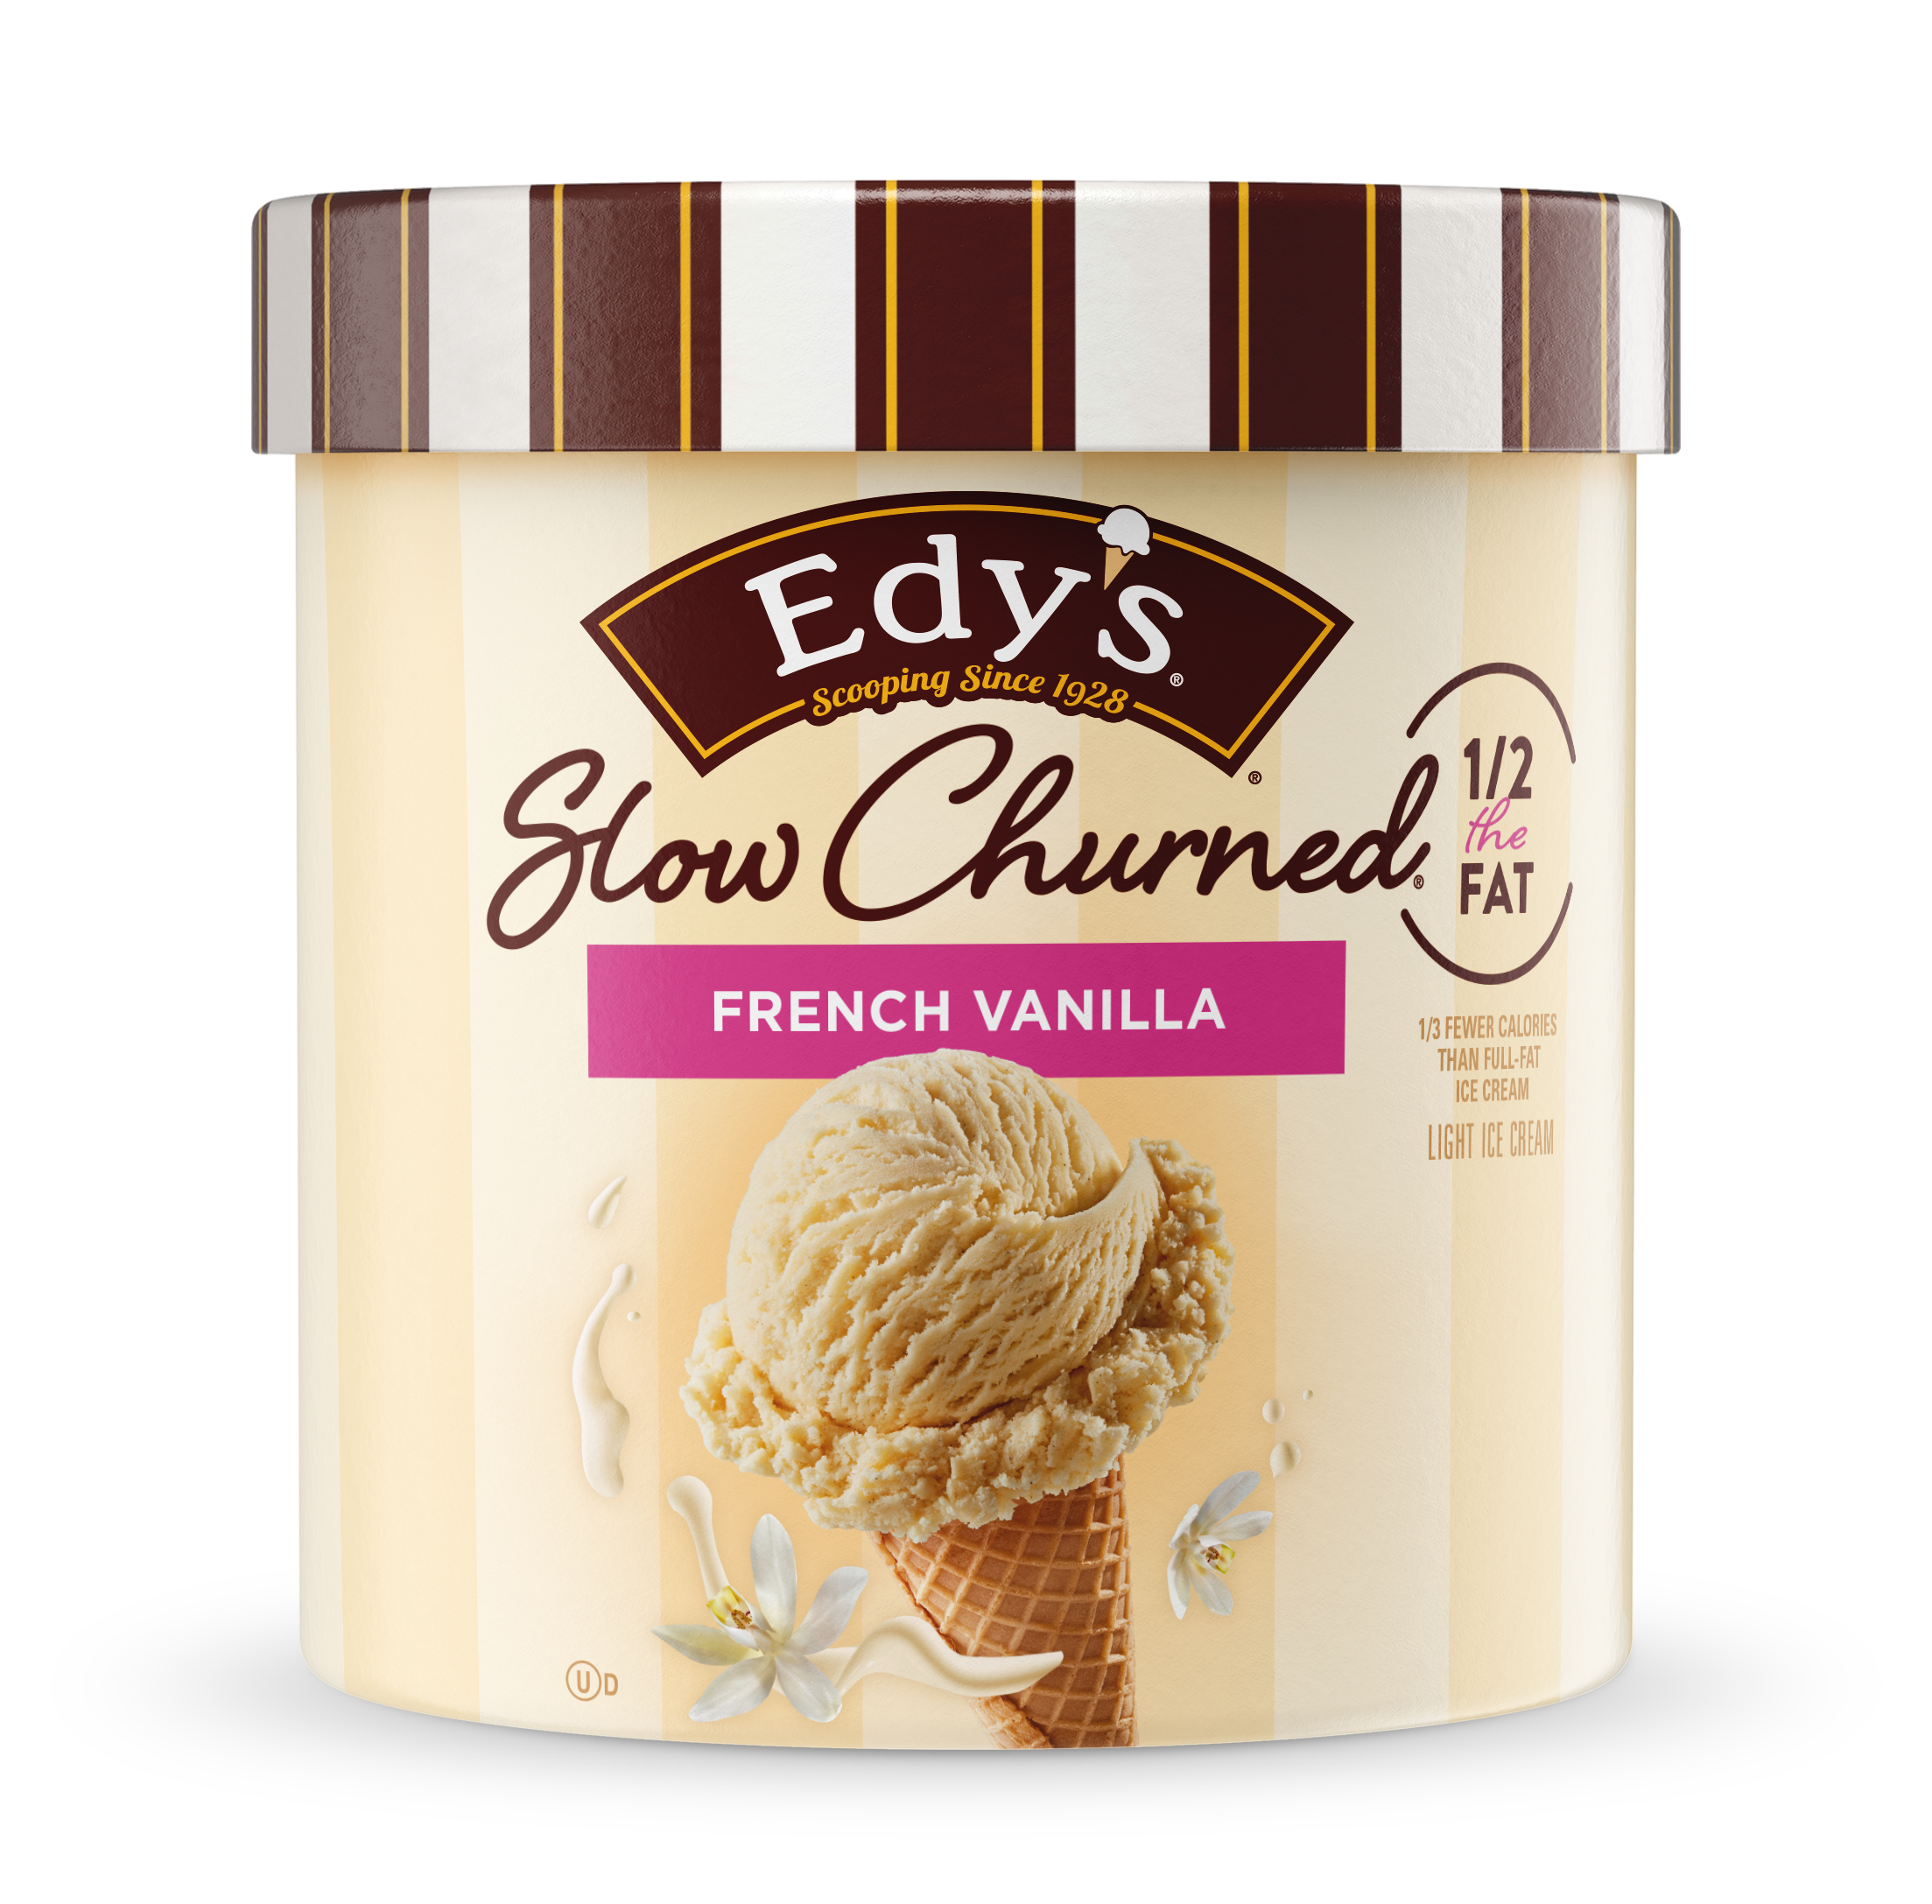 Carton of Edy's slow-churned French Vanilla ice cream